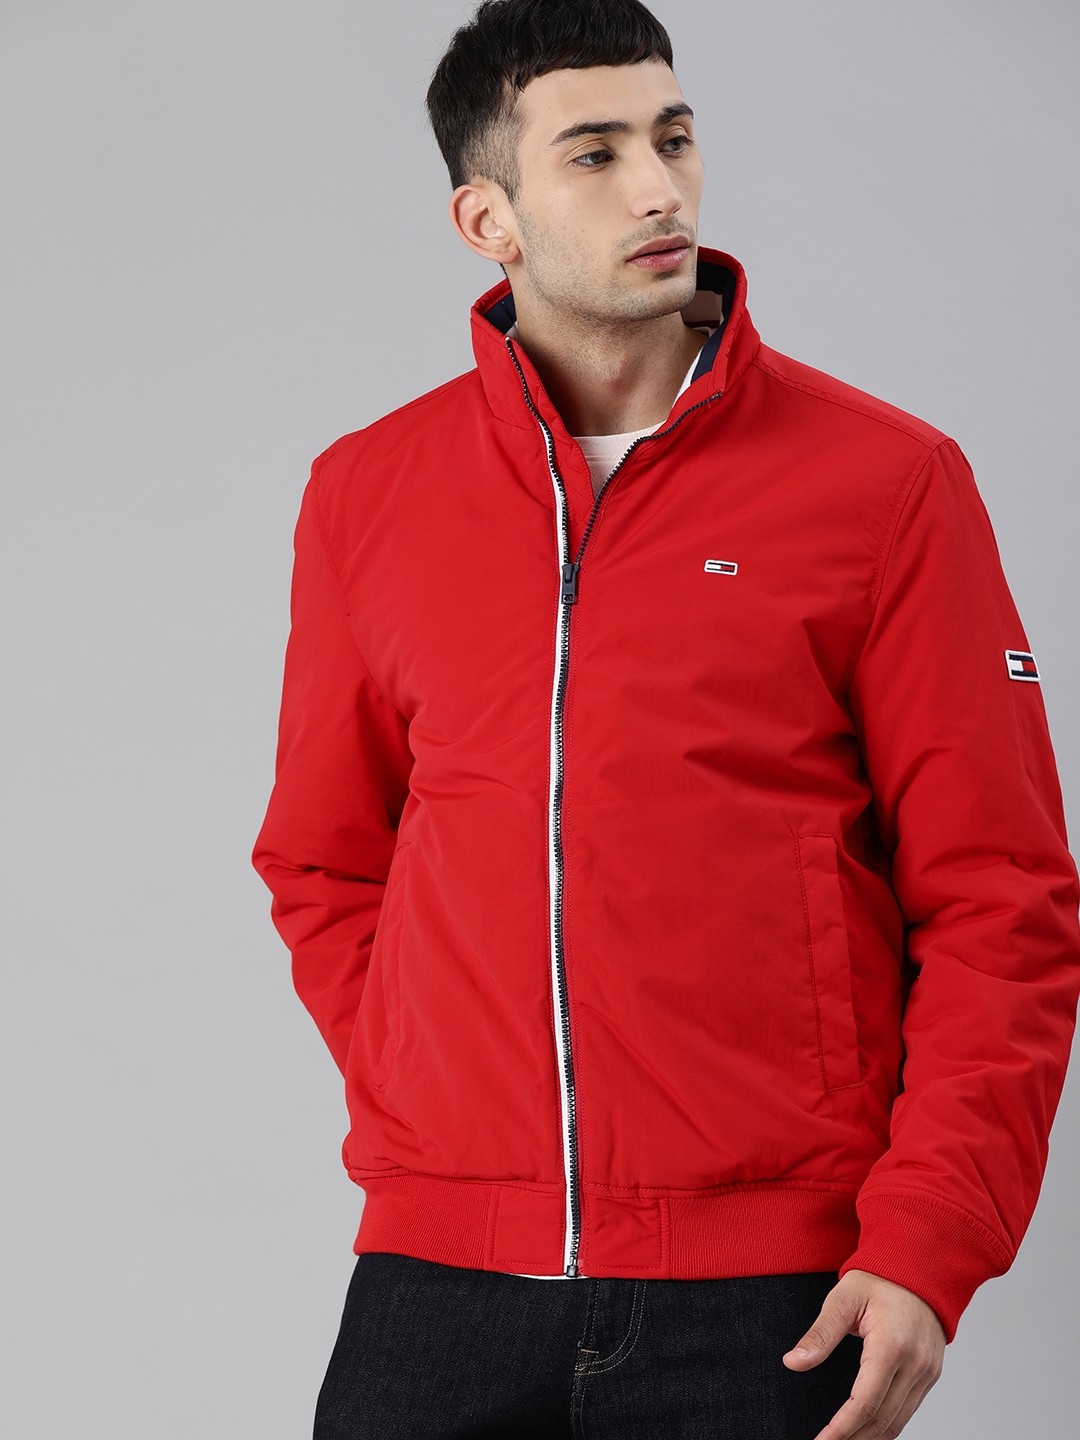 Buy Tommy Hilfiger Men Red Solid Bomber Jacket - Jackets for Men ...